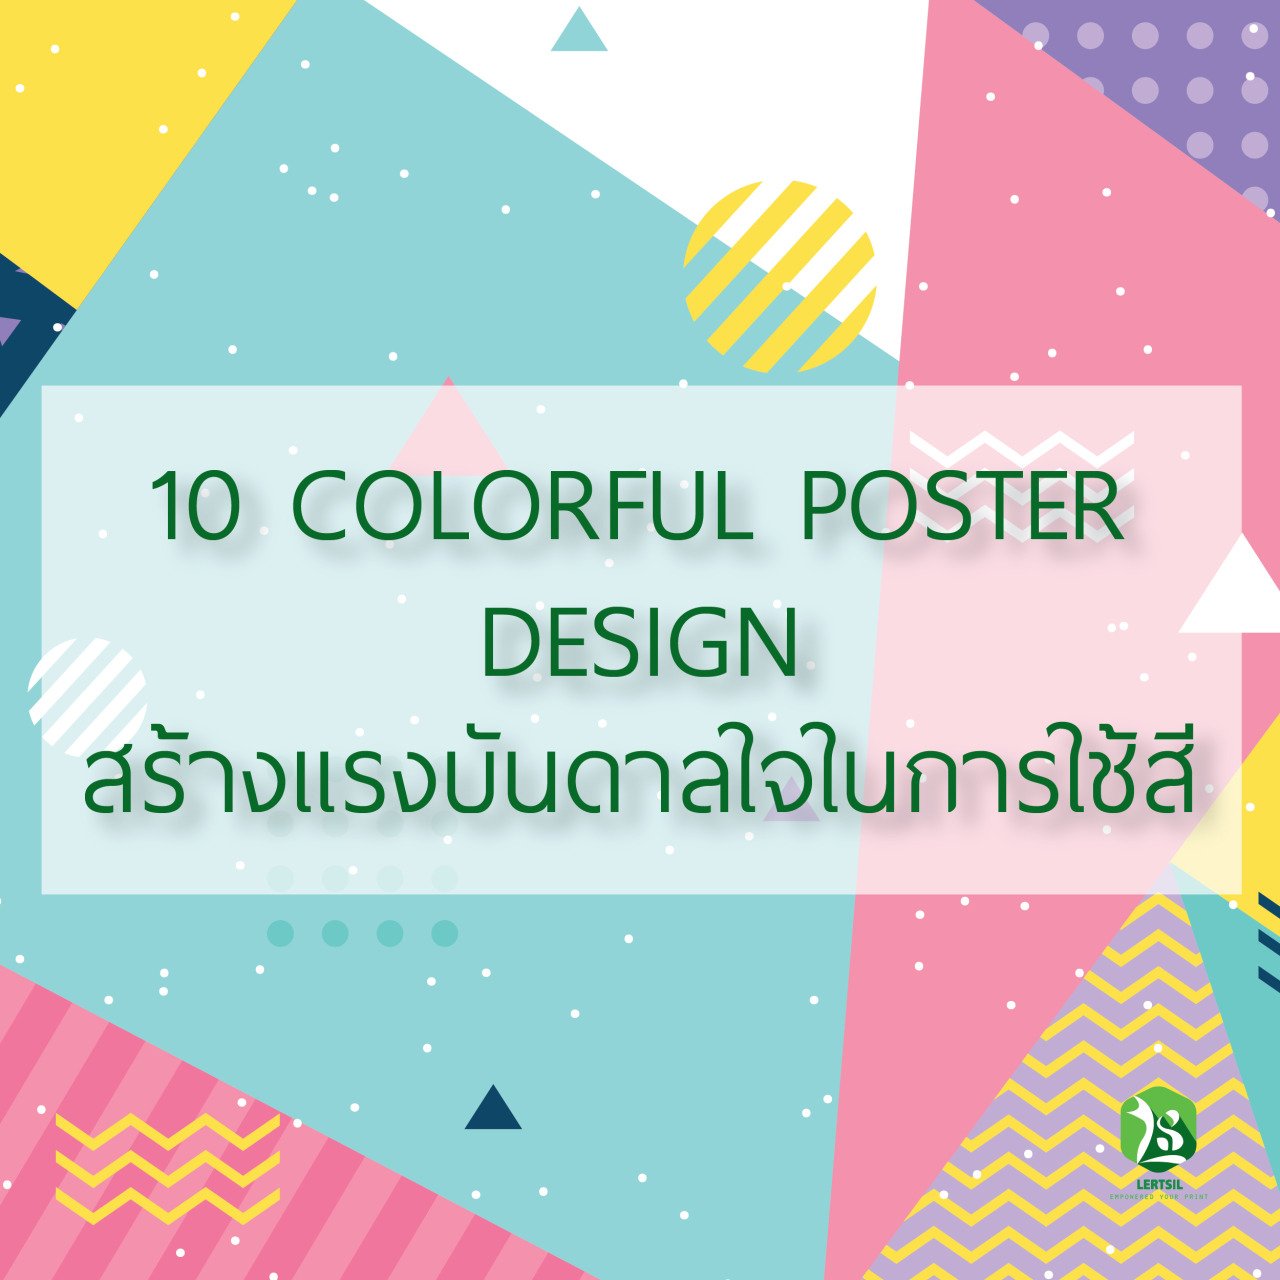 10 COLORFUL POSTER DESIGN  สร้างเเรงบันดาลใจในการใช้สี